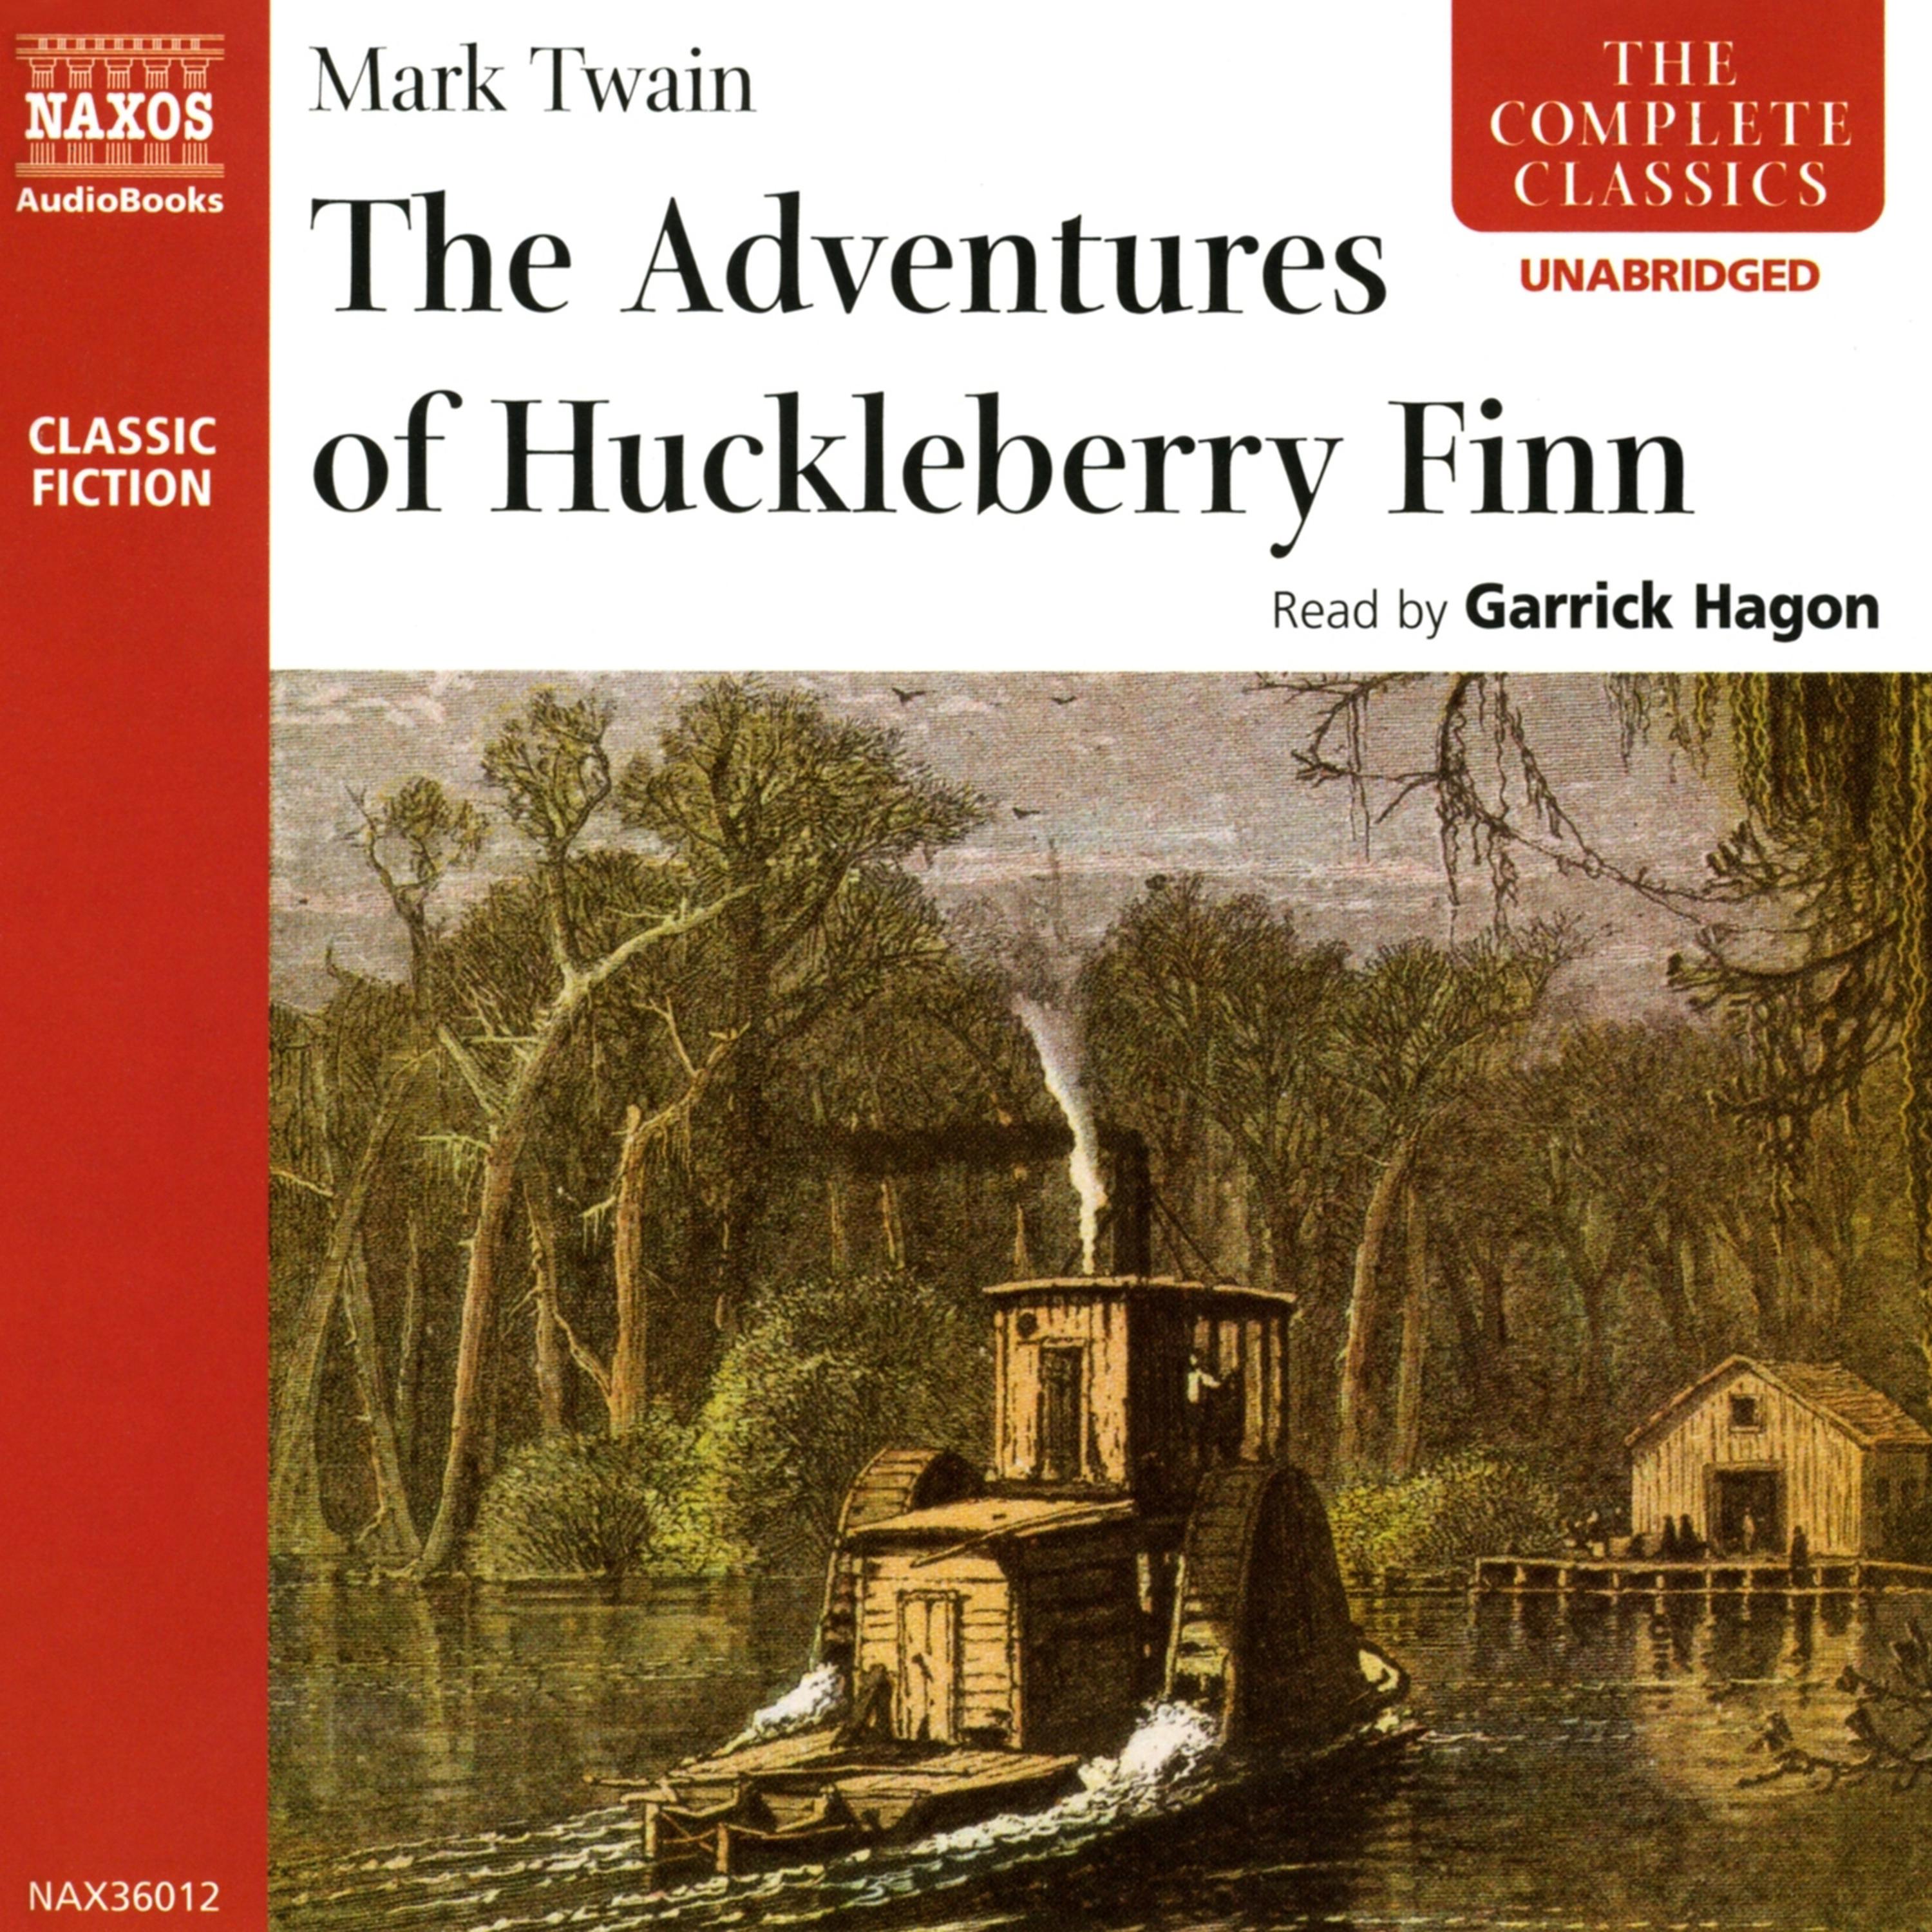 Mark Twain the Adventures of Huckleberry Finn. Adventures of Huckleberry Finn. The Adventures of Huckleberry Finn by Mark Twain.